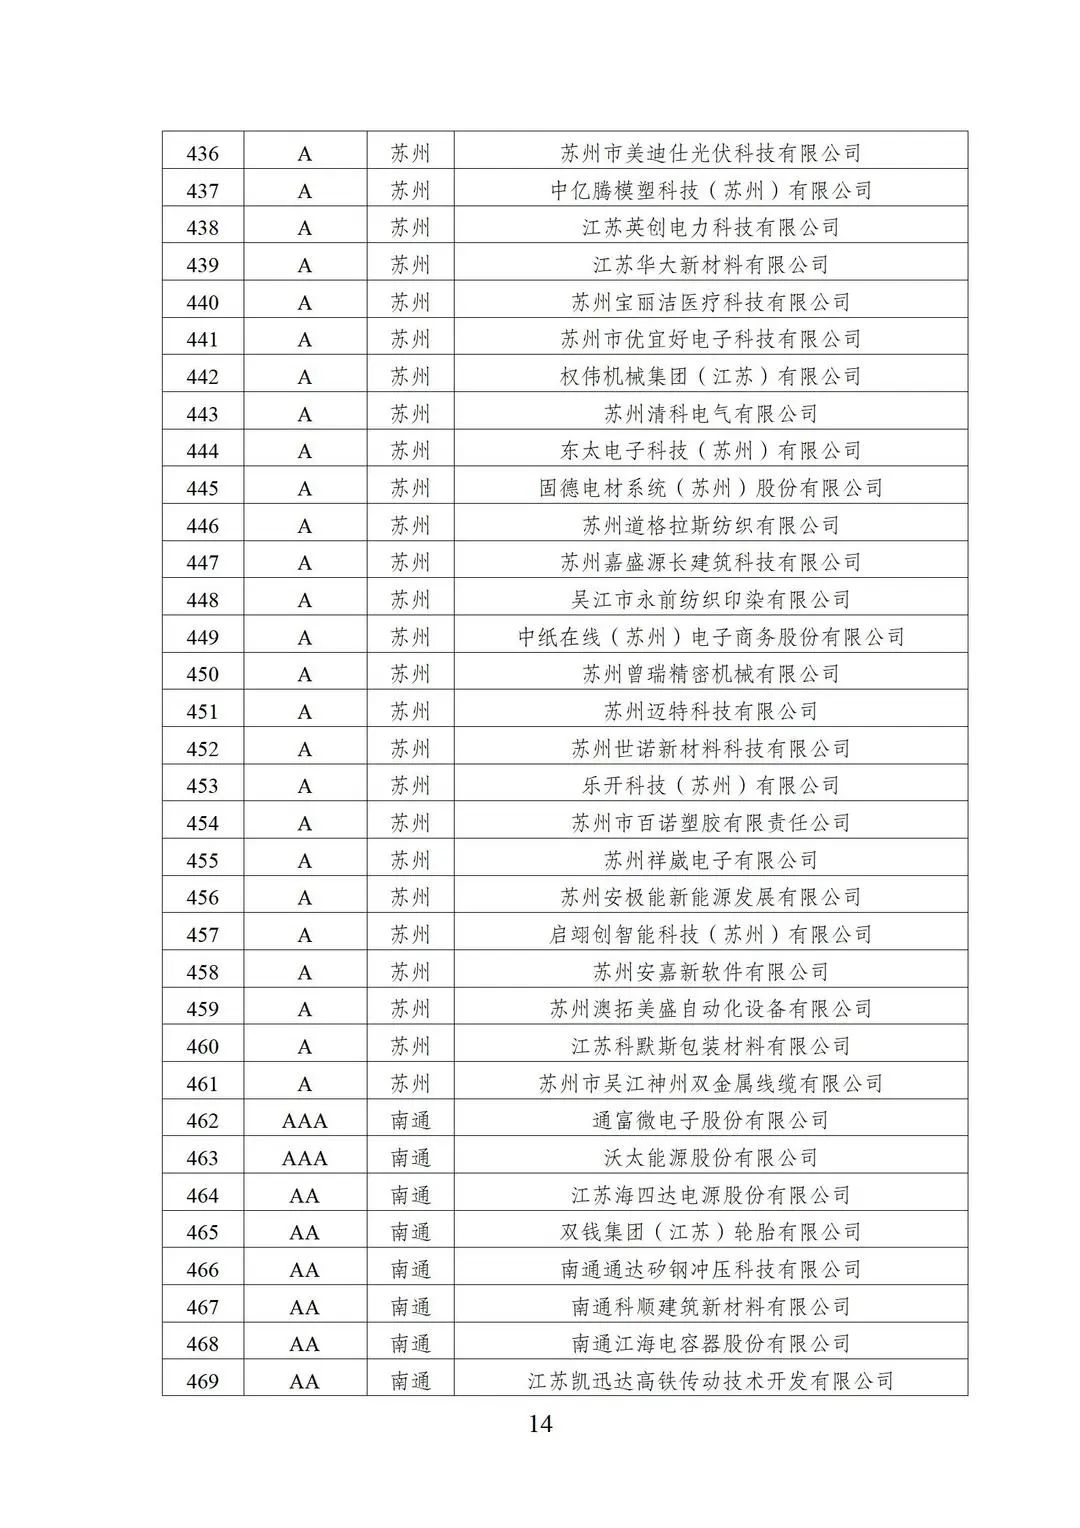 2022年江苏省两化融合管理体系贯标示范企业培育对象名单14.jpg